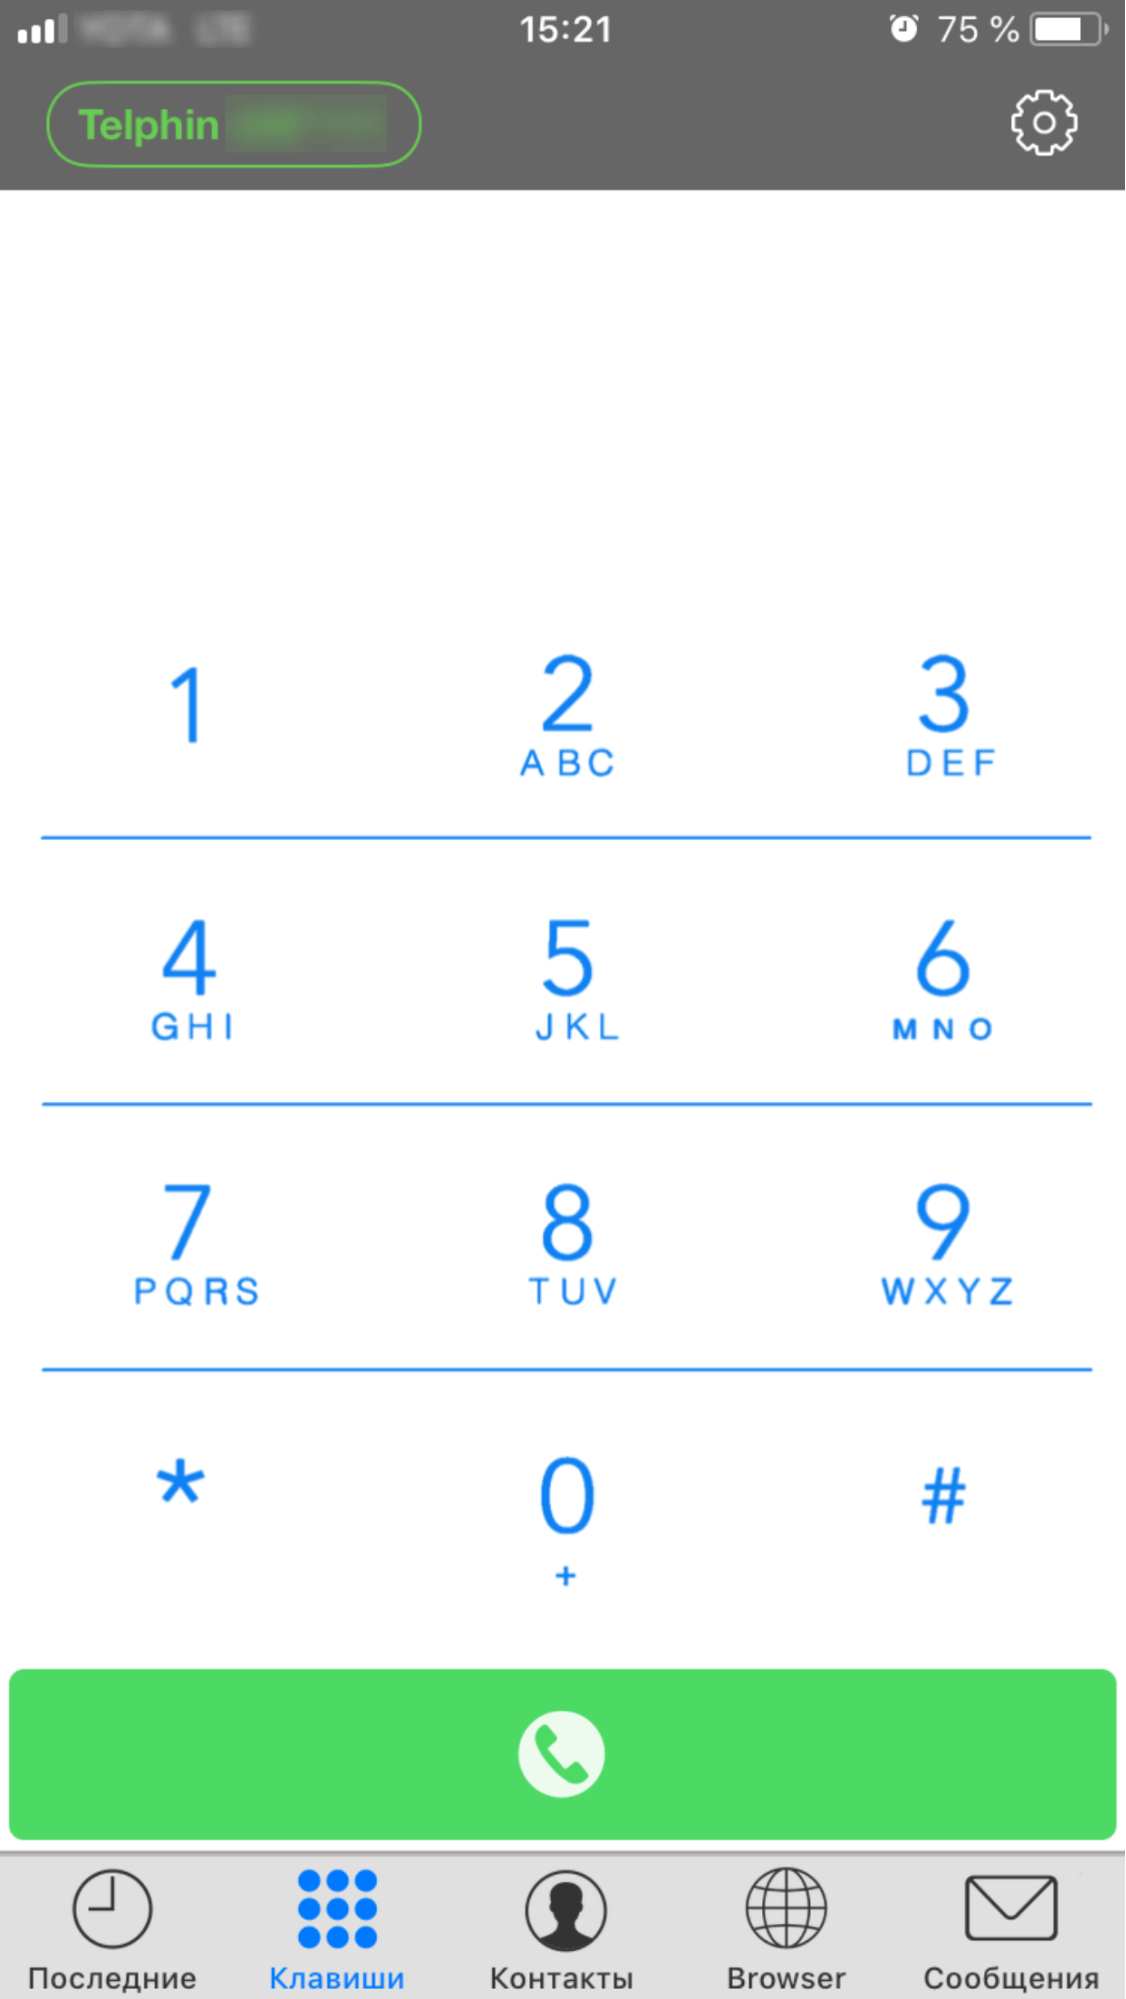 Софтфон Телфин — Скачать программный телефон SIP (Софтфон) для iPhone, Android и Windows изображение 1